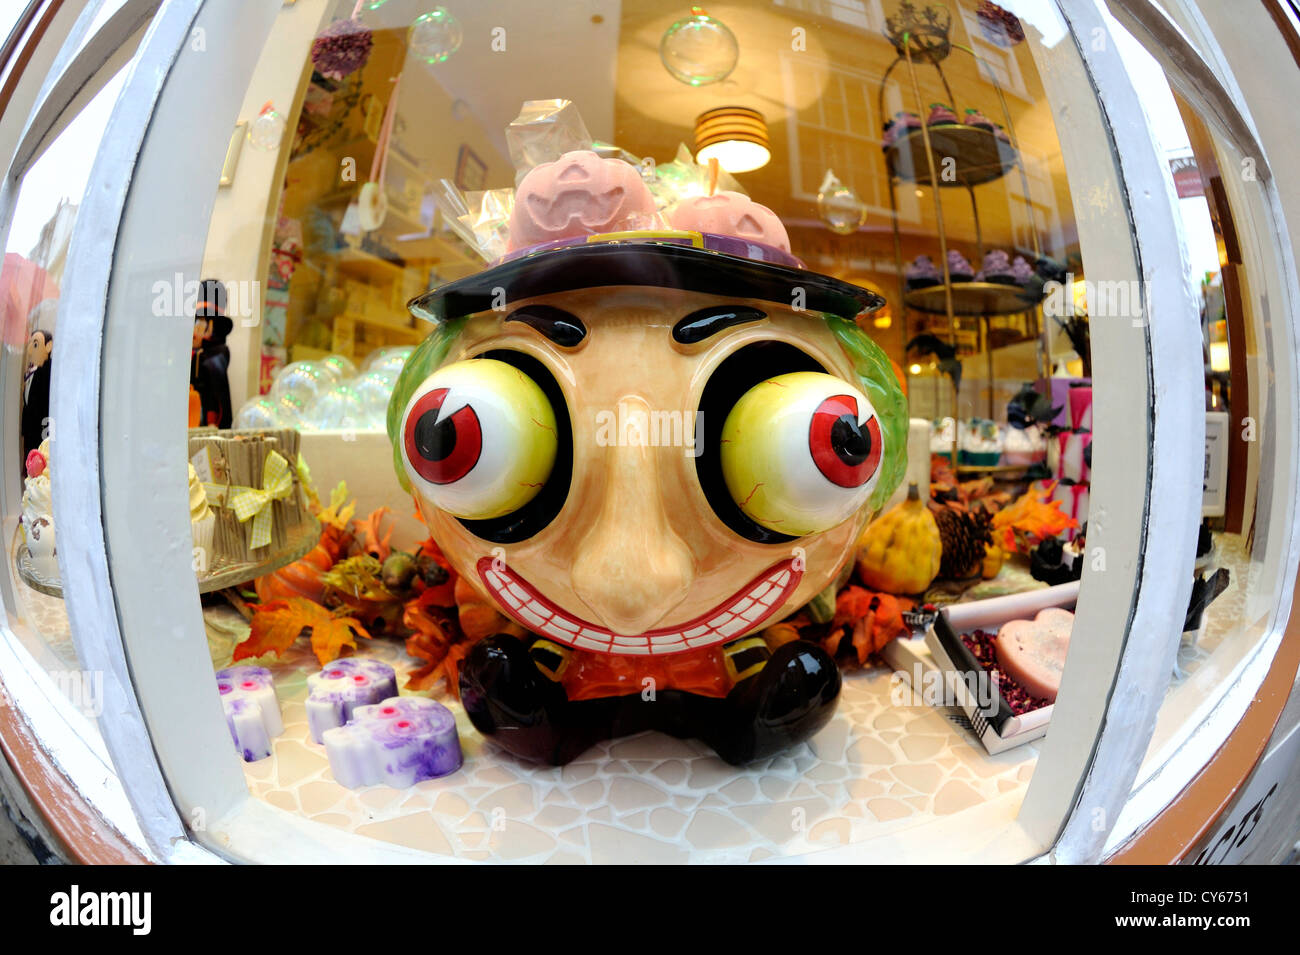 Keramiktopf einer Größe Kopf mit großen hervorquellenden Augen verwendet in einem Schaufenster, um duftende Seifen zu verkaufen. Stockfoto